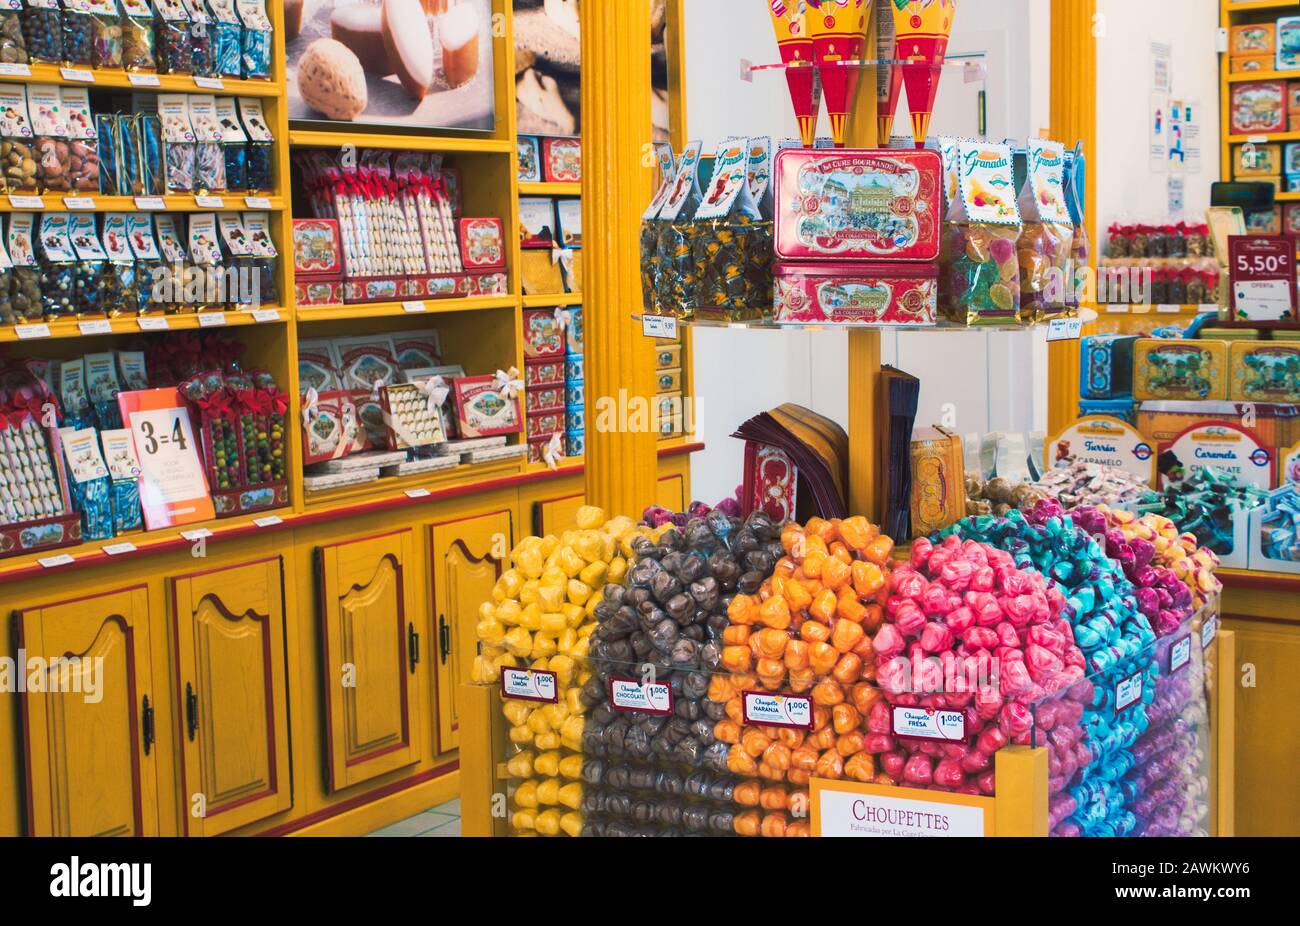 Granada / Spagna - 21 agosto 2019: Interno di un negozio di dolci con pasticceria assortita Foto Stock